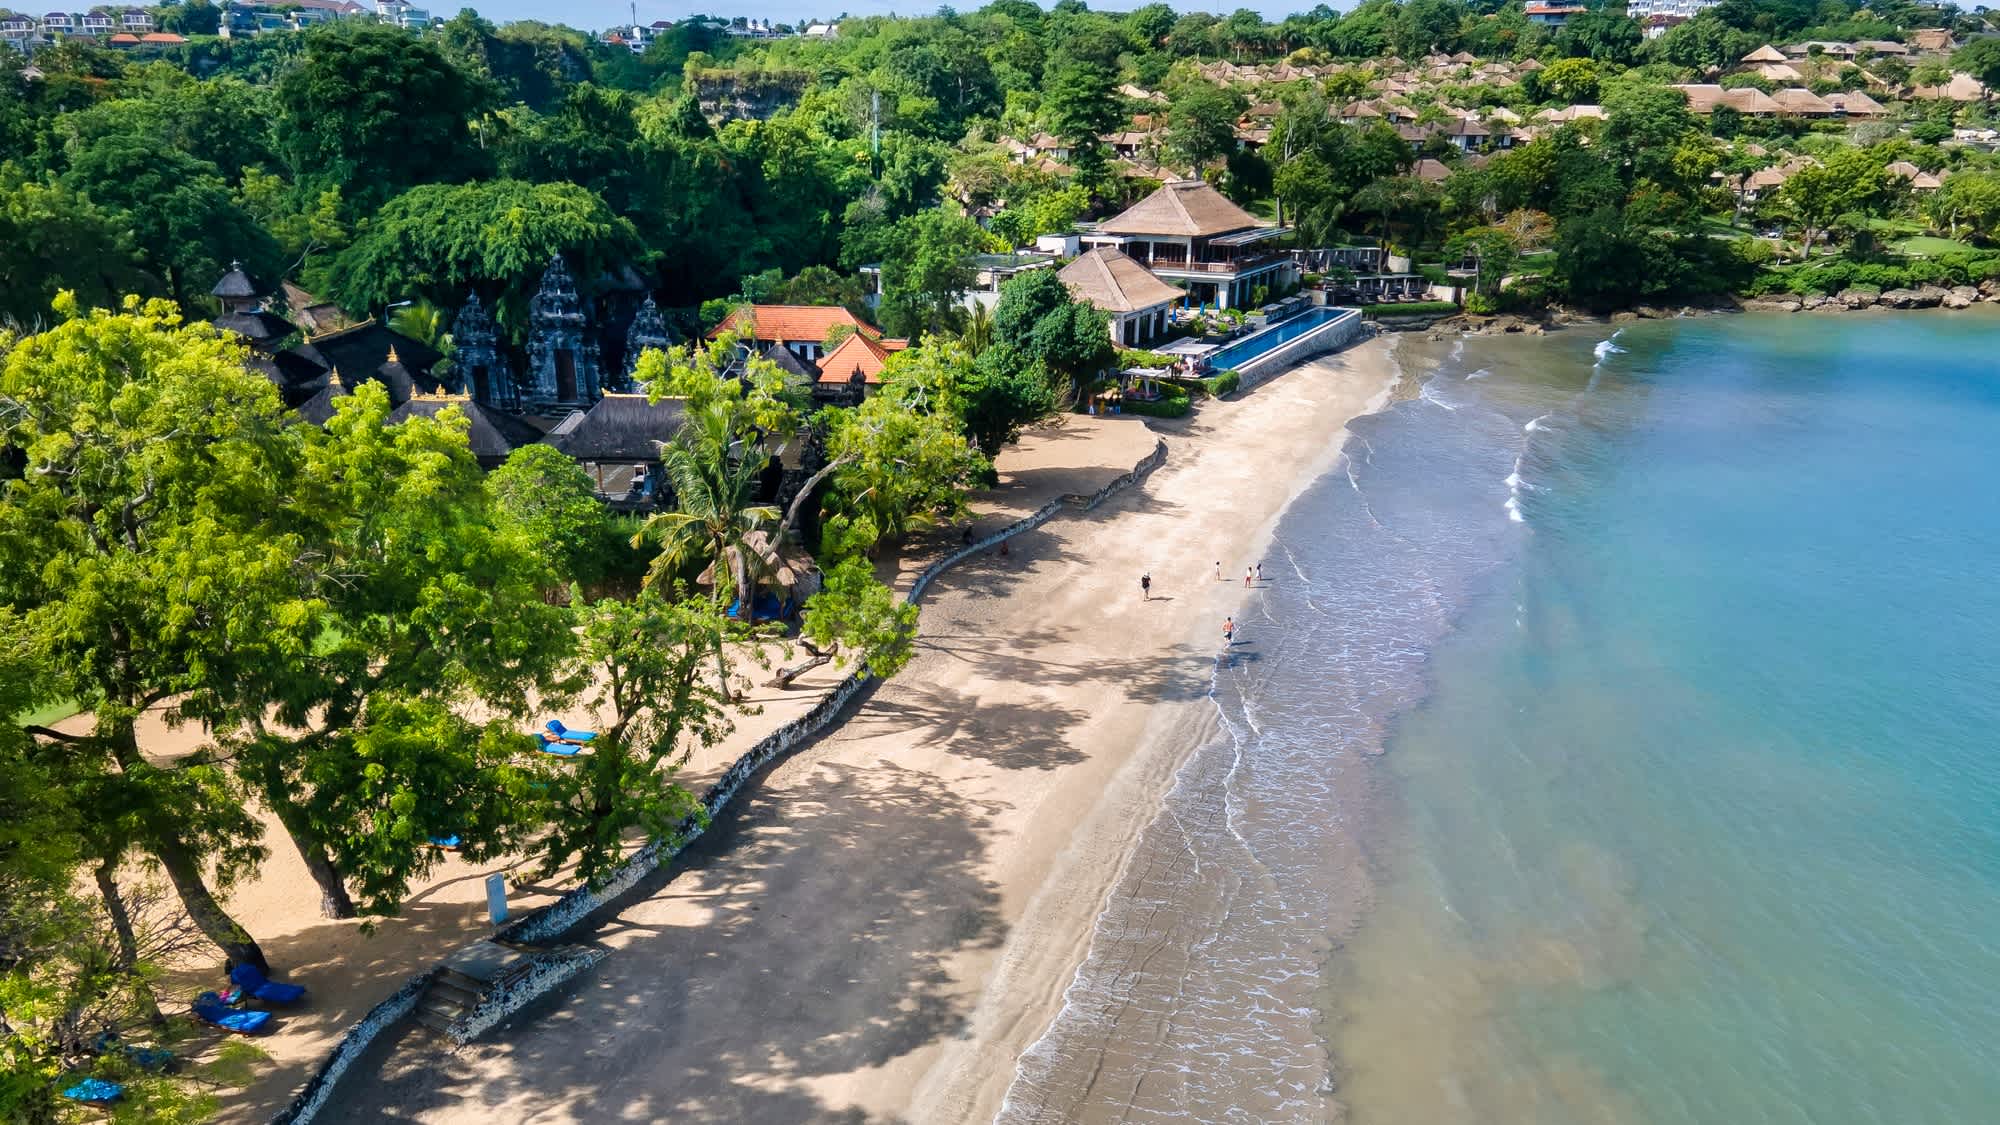 Luftaufnahme des Jimbaran Beach auf Bali, Indonesien mit grüner Vegetation im Bild und Häusern am Strand.